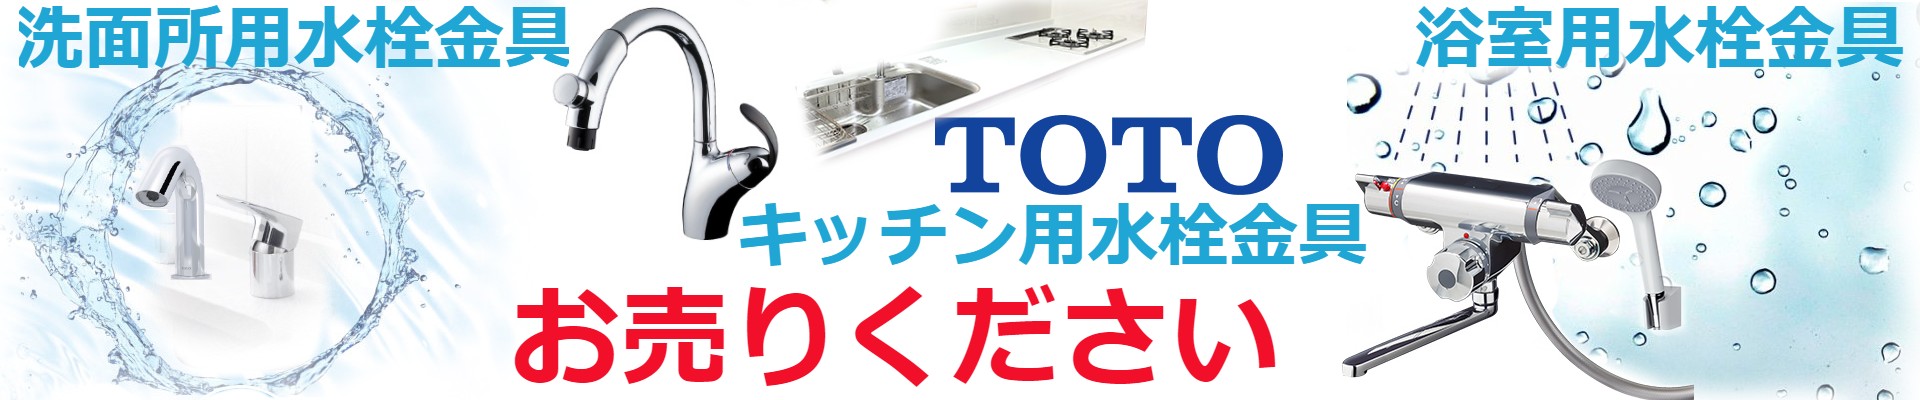 TOTO TLE21SS1W 水栓金具  アクアオート 単水栓 GCシリーズ 台付自動水栓 発電